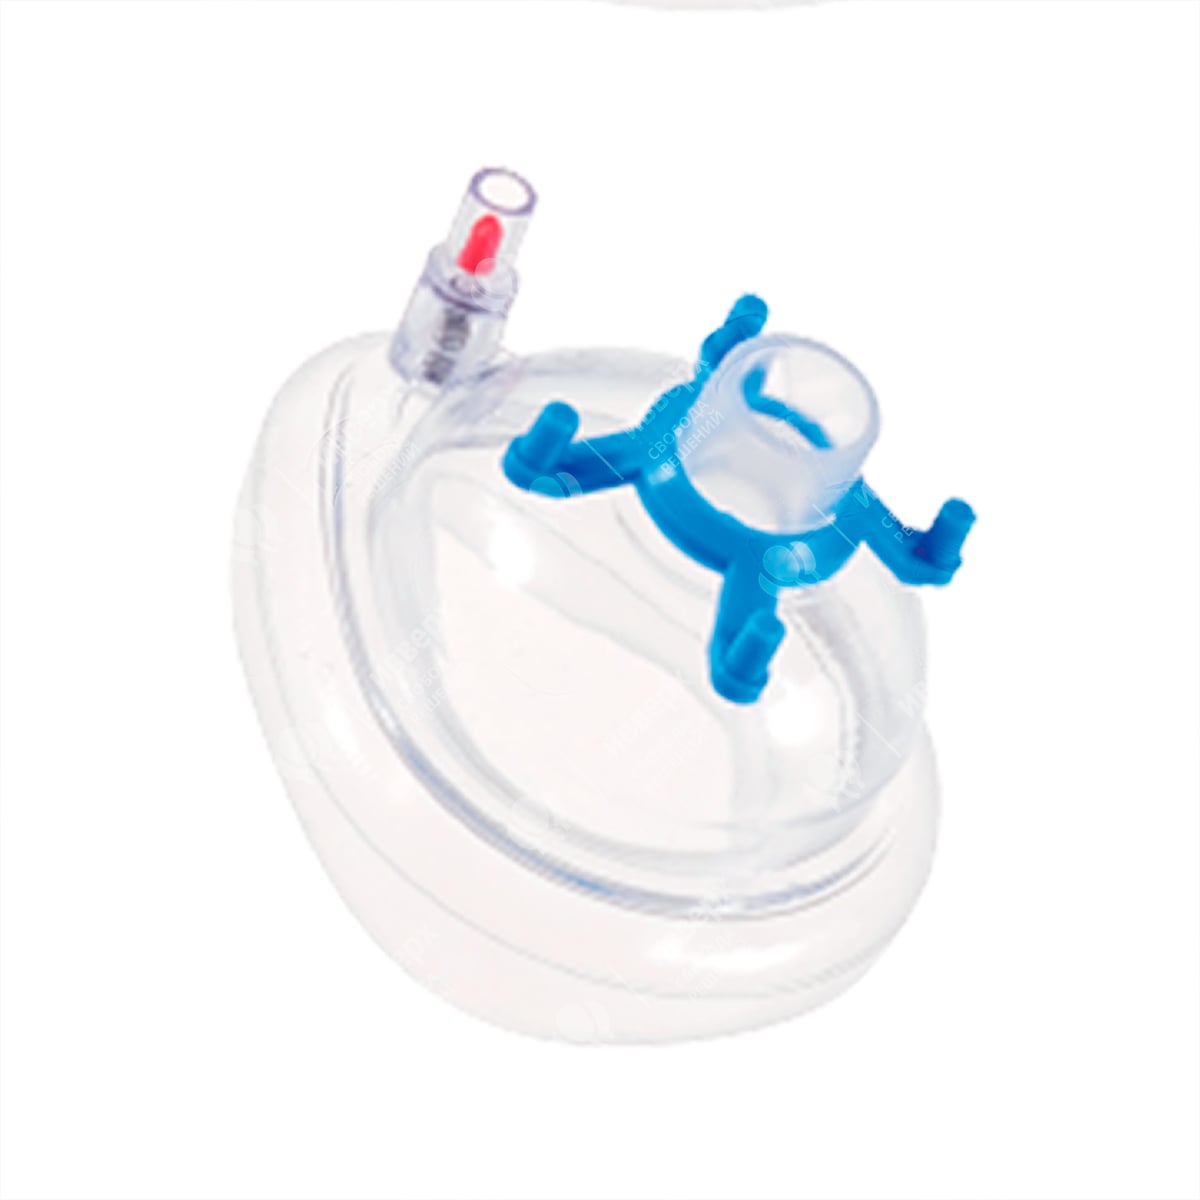 Маска анестезиологическая с надувной манжетой, клапаном поддува и крепежным кольцом, размер 1